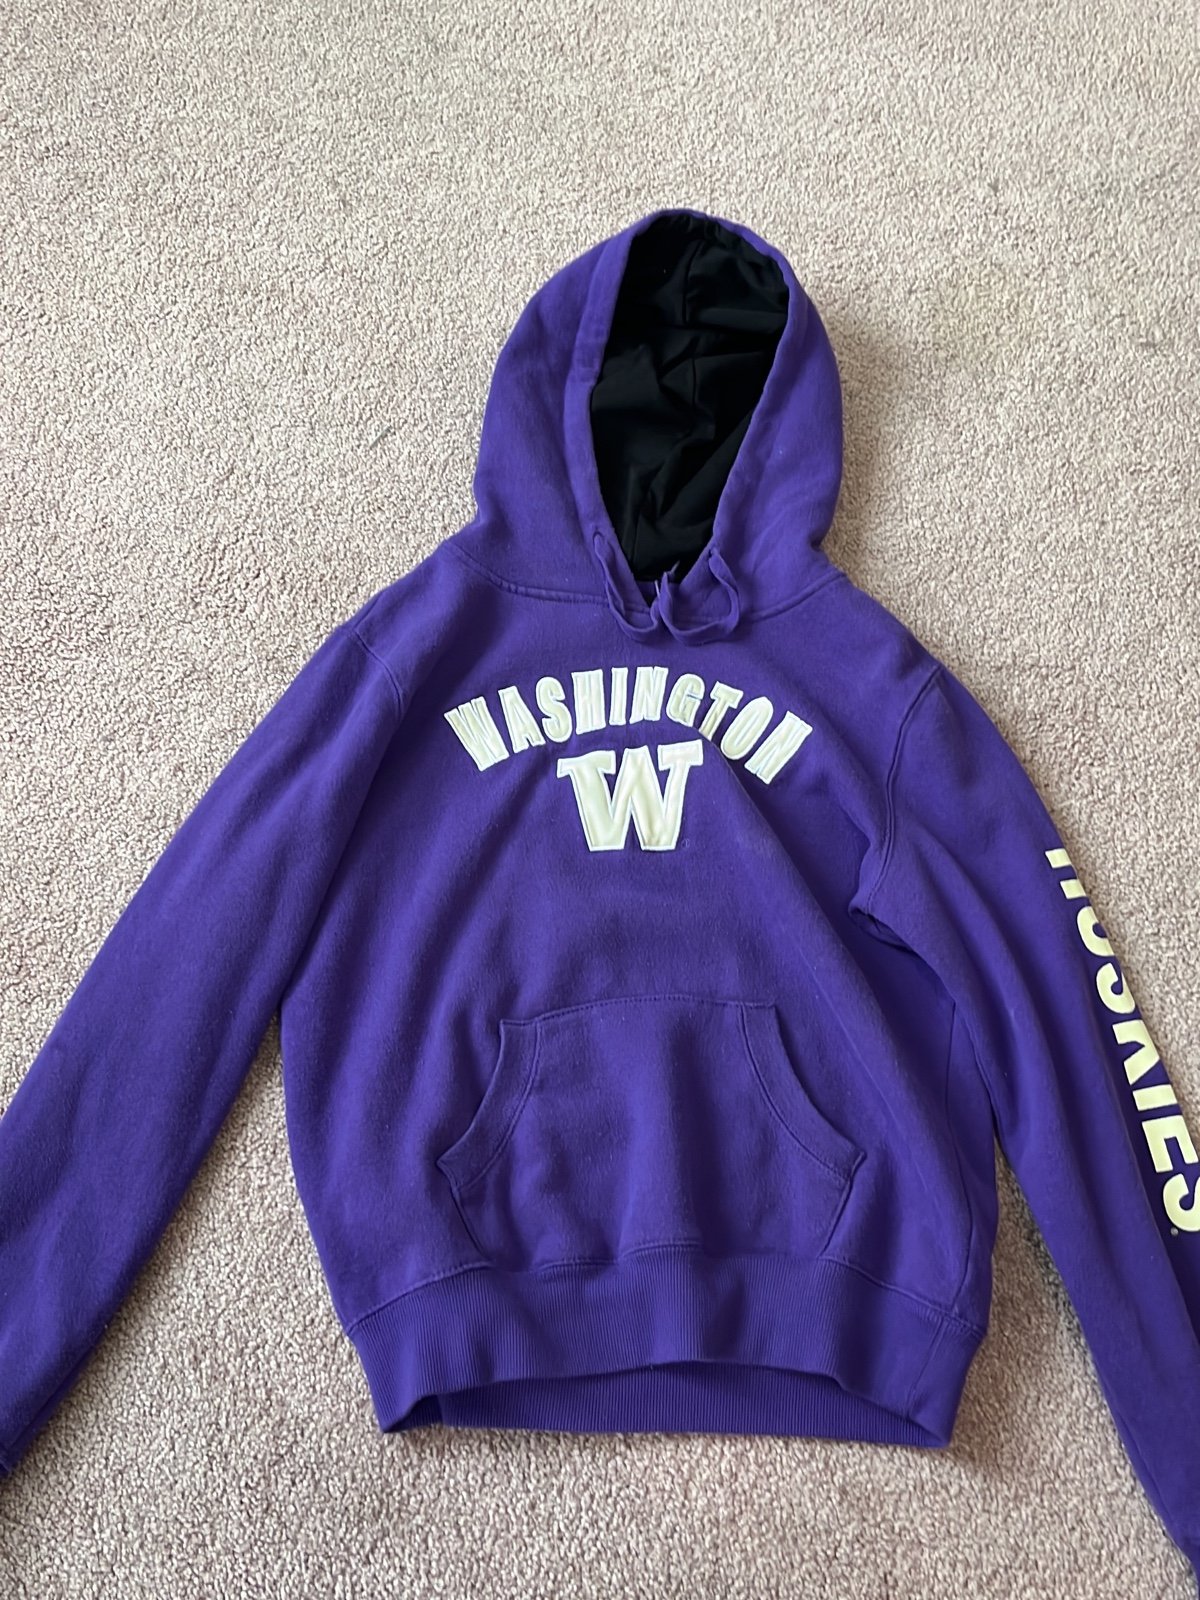 Washington Huskies College Sweatshirt ewPW2Zi9u